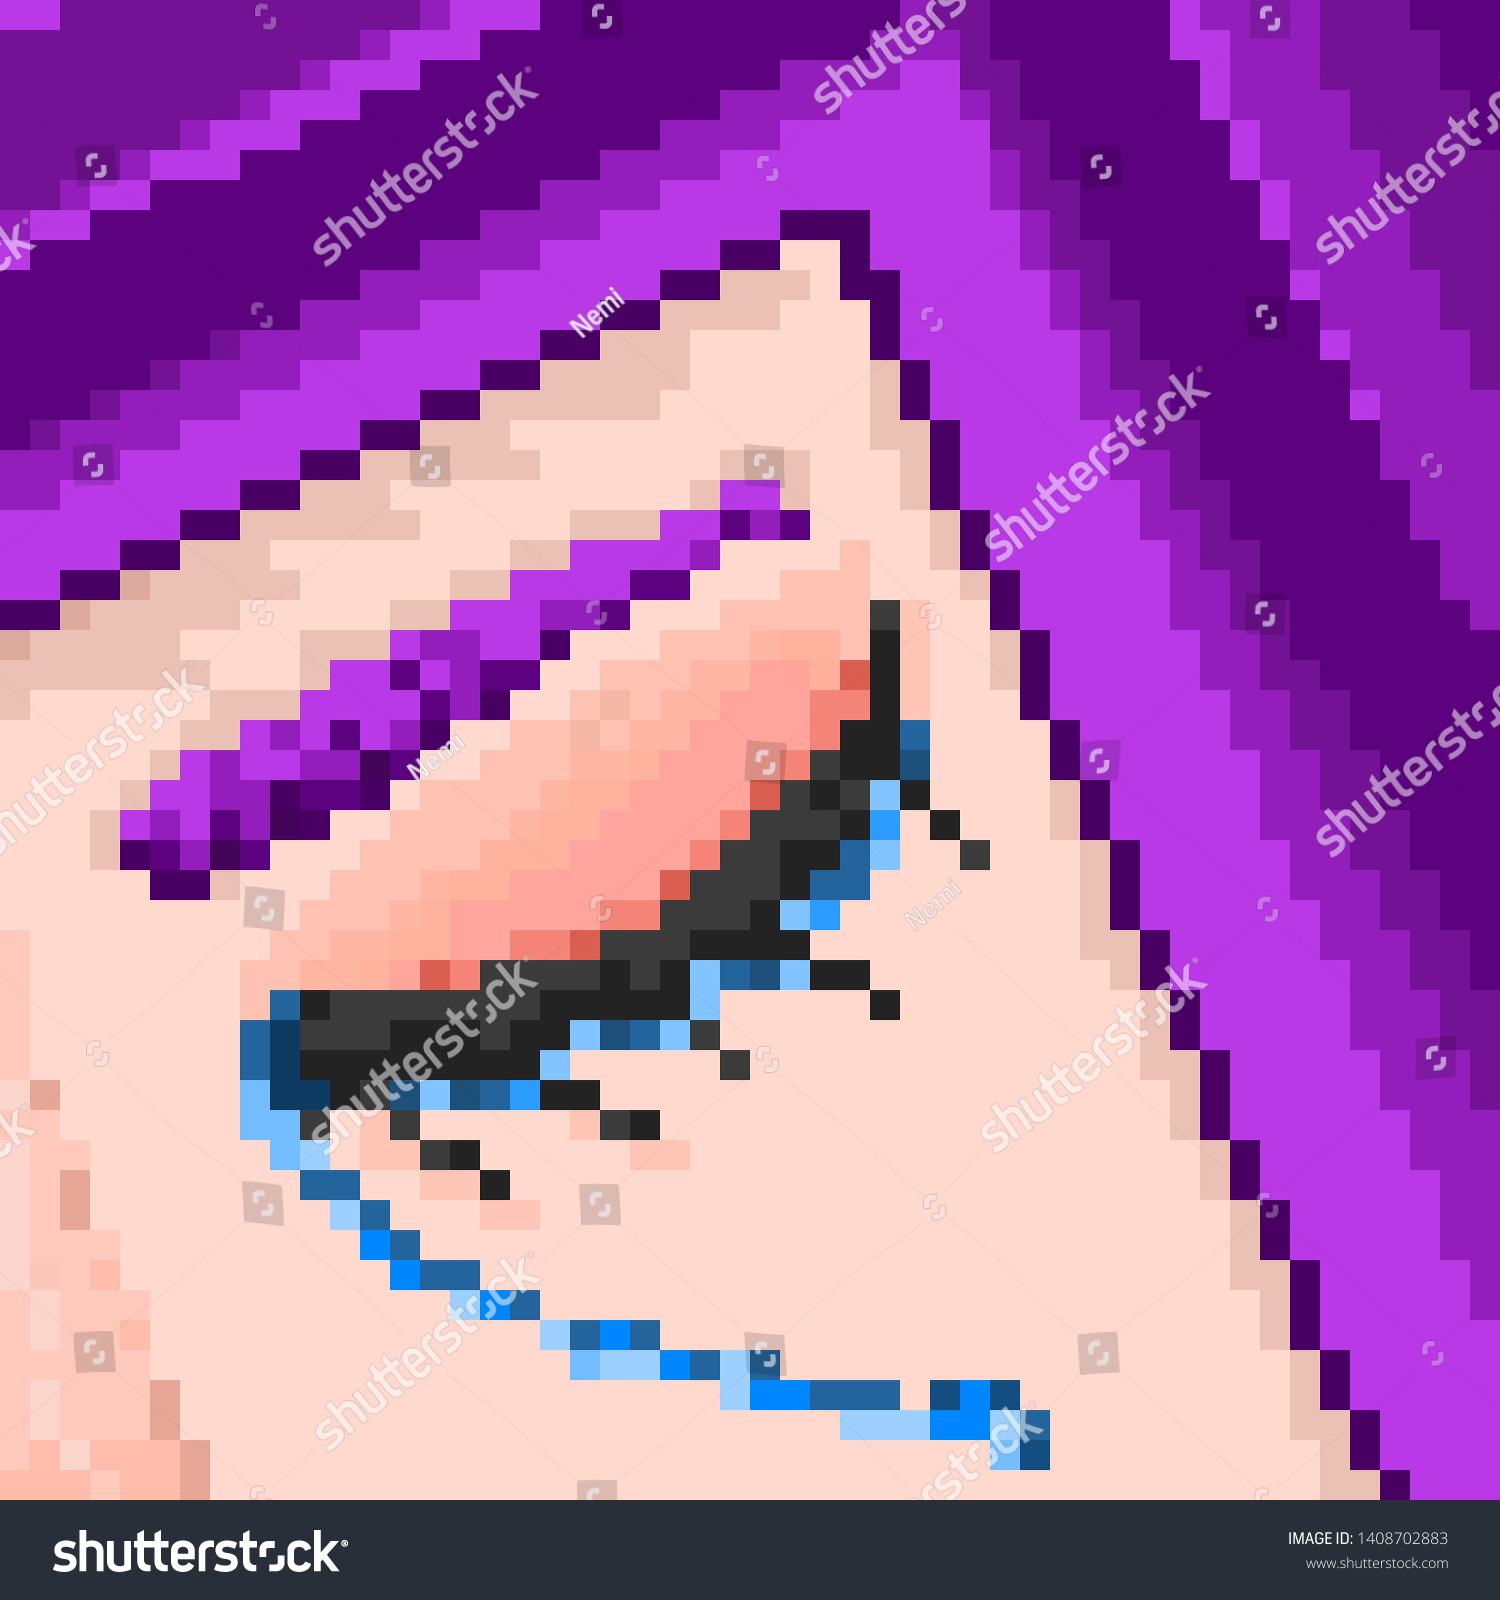 Sad Pixel Art